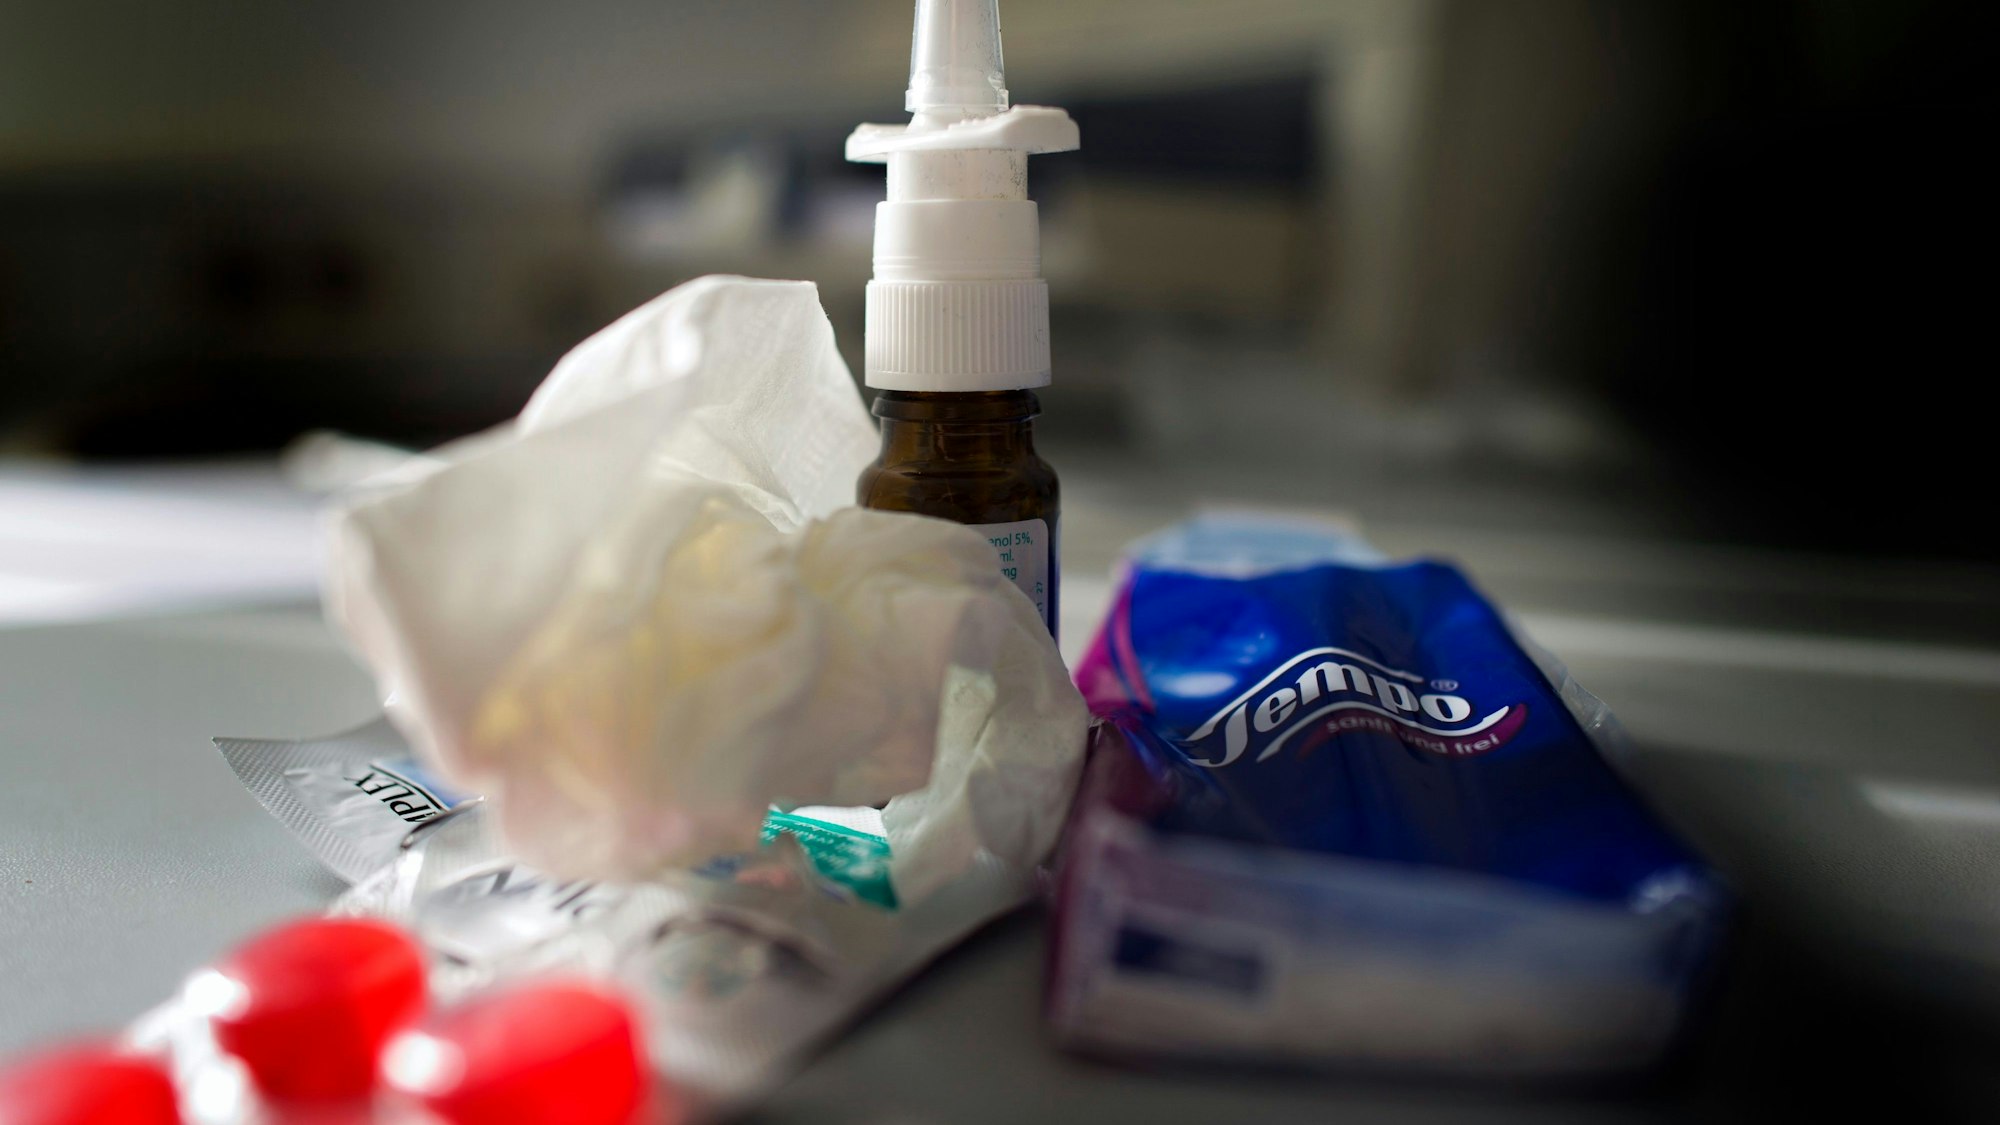 Anti-Erkältungsmittel wie Nasenspray, Halstabletten und Papiertaschentücher liegen auf einem Tisch.